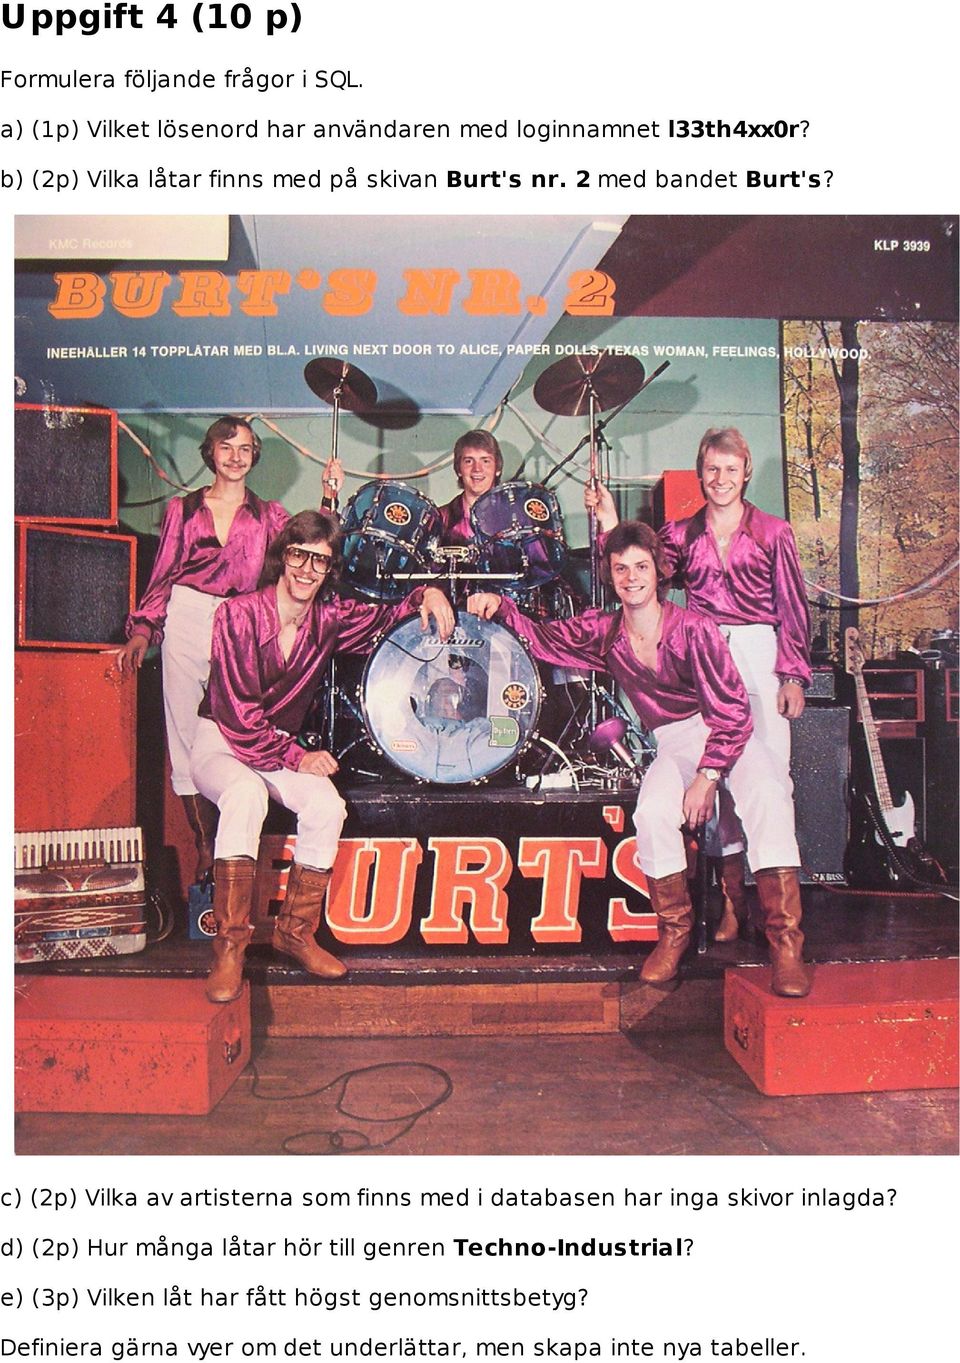 b) (2p) Vilka låtar finns med på skivan Burt's nr. 2 med bandet Burt's?